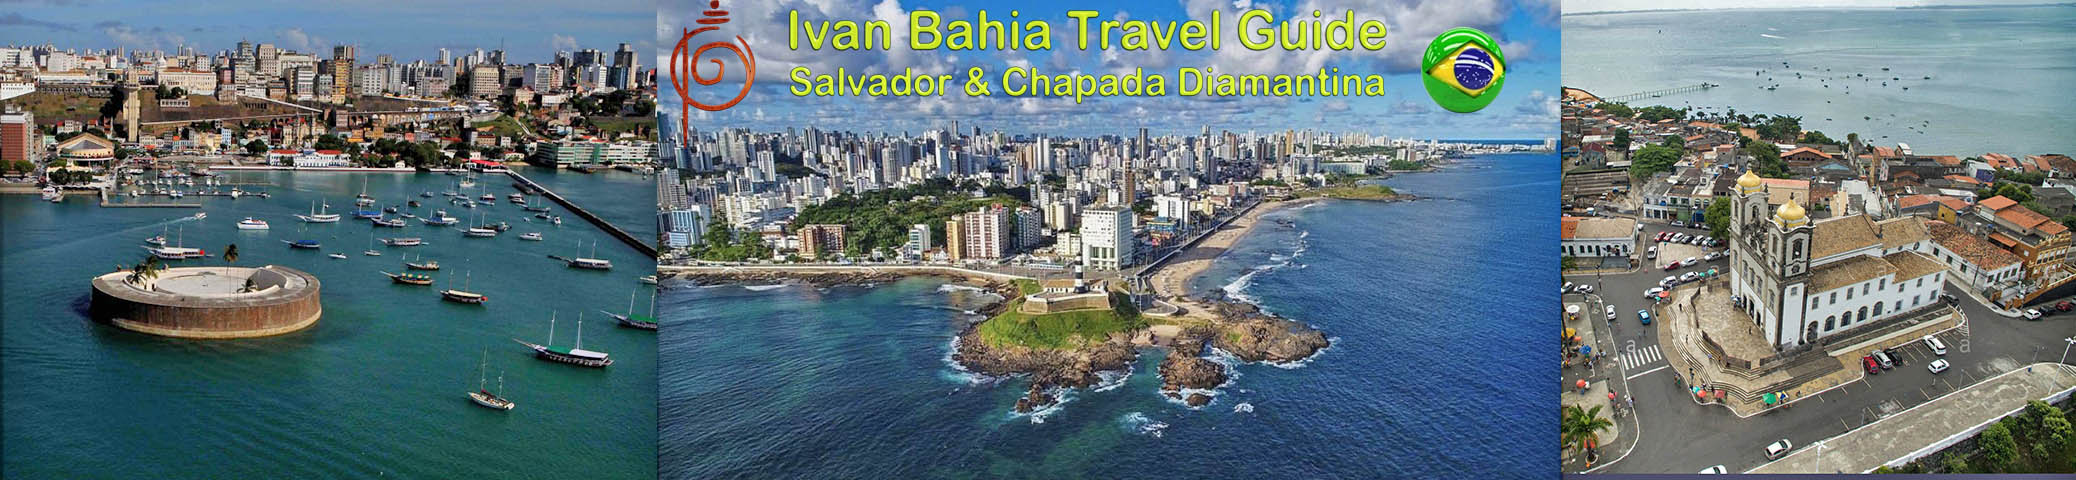 visit Salvador da Bahia, Ribeira and Bonfim with Ivan Bahia Guide / Photography by #IvanBahiaGuide ref., #ToursByLocals, #fernandobingre, @fernandobingre